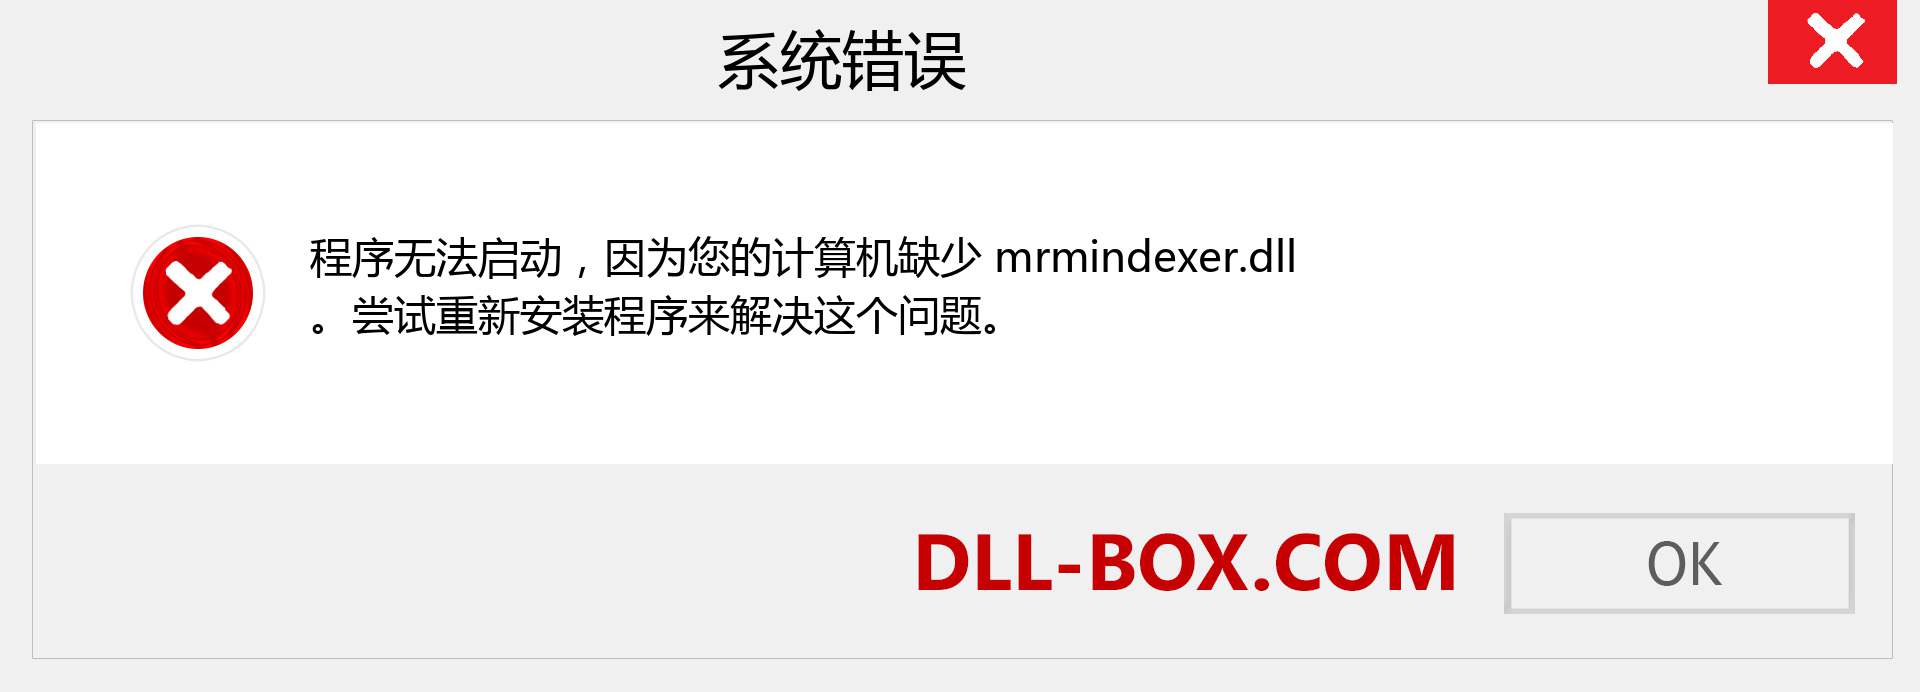 mrmindexer.dll 文件丢失？。 适用于 Windows 7、8、10 的下载 - 修复 Windows、照片、图像上的 mrmindexer dll 丢失错误